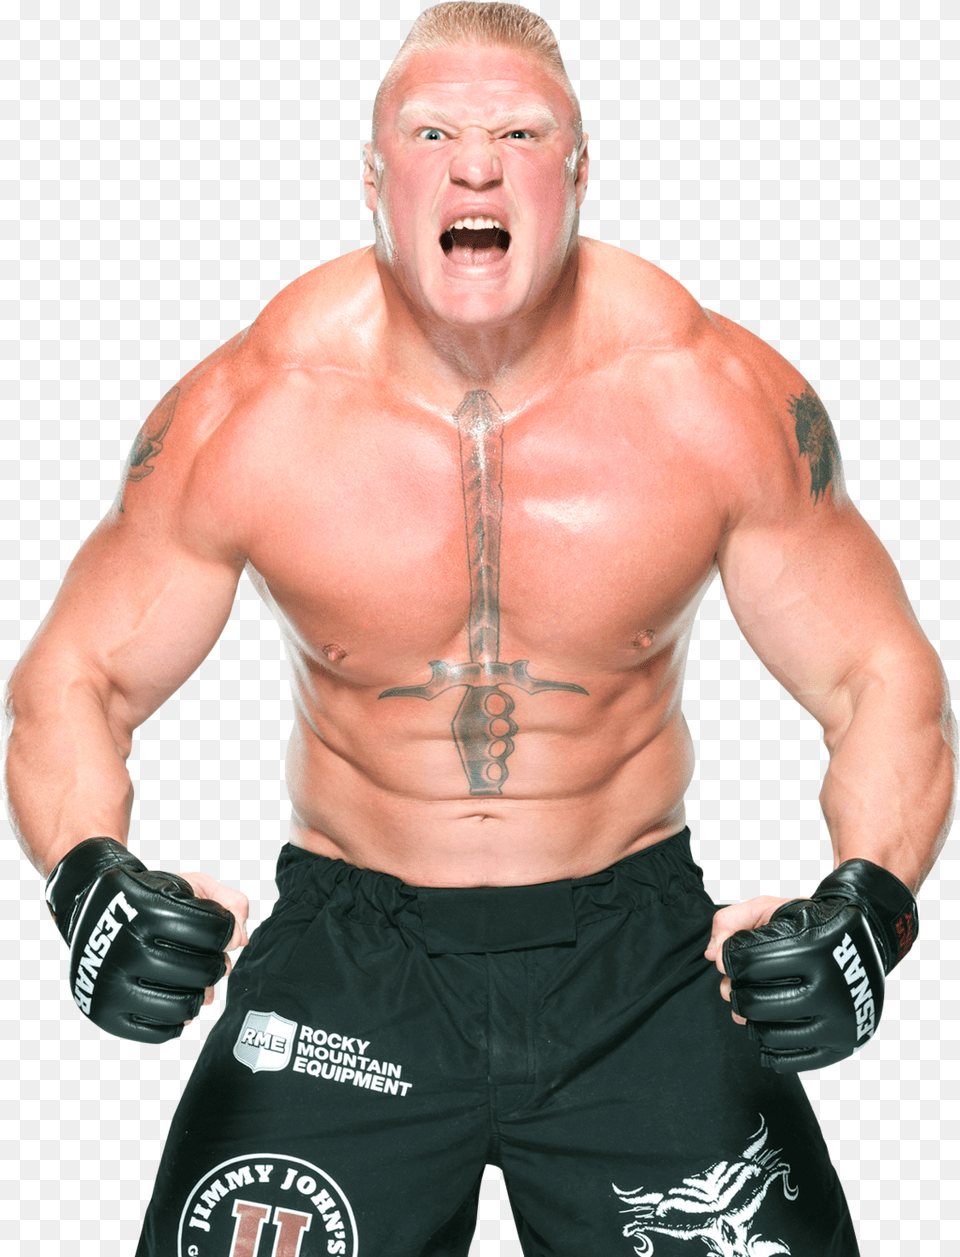 Brock Lesnar Background Brock Lesnar, Adult, Person, Man, Male Free Transparent Png